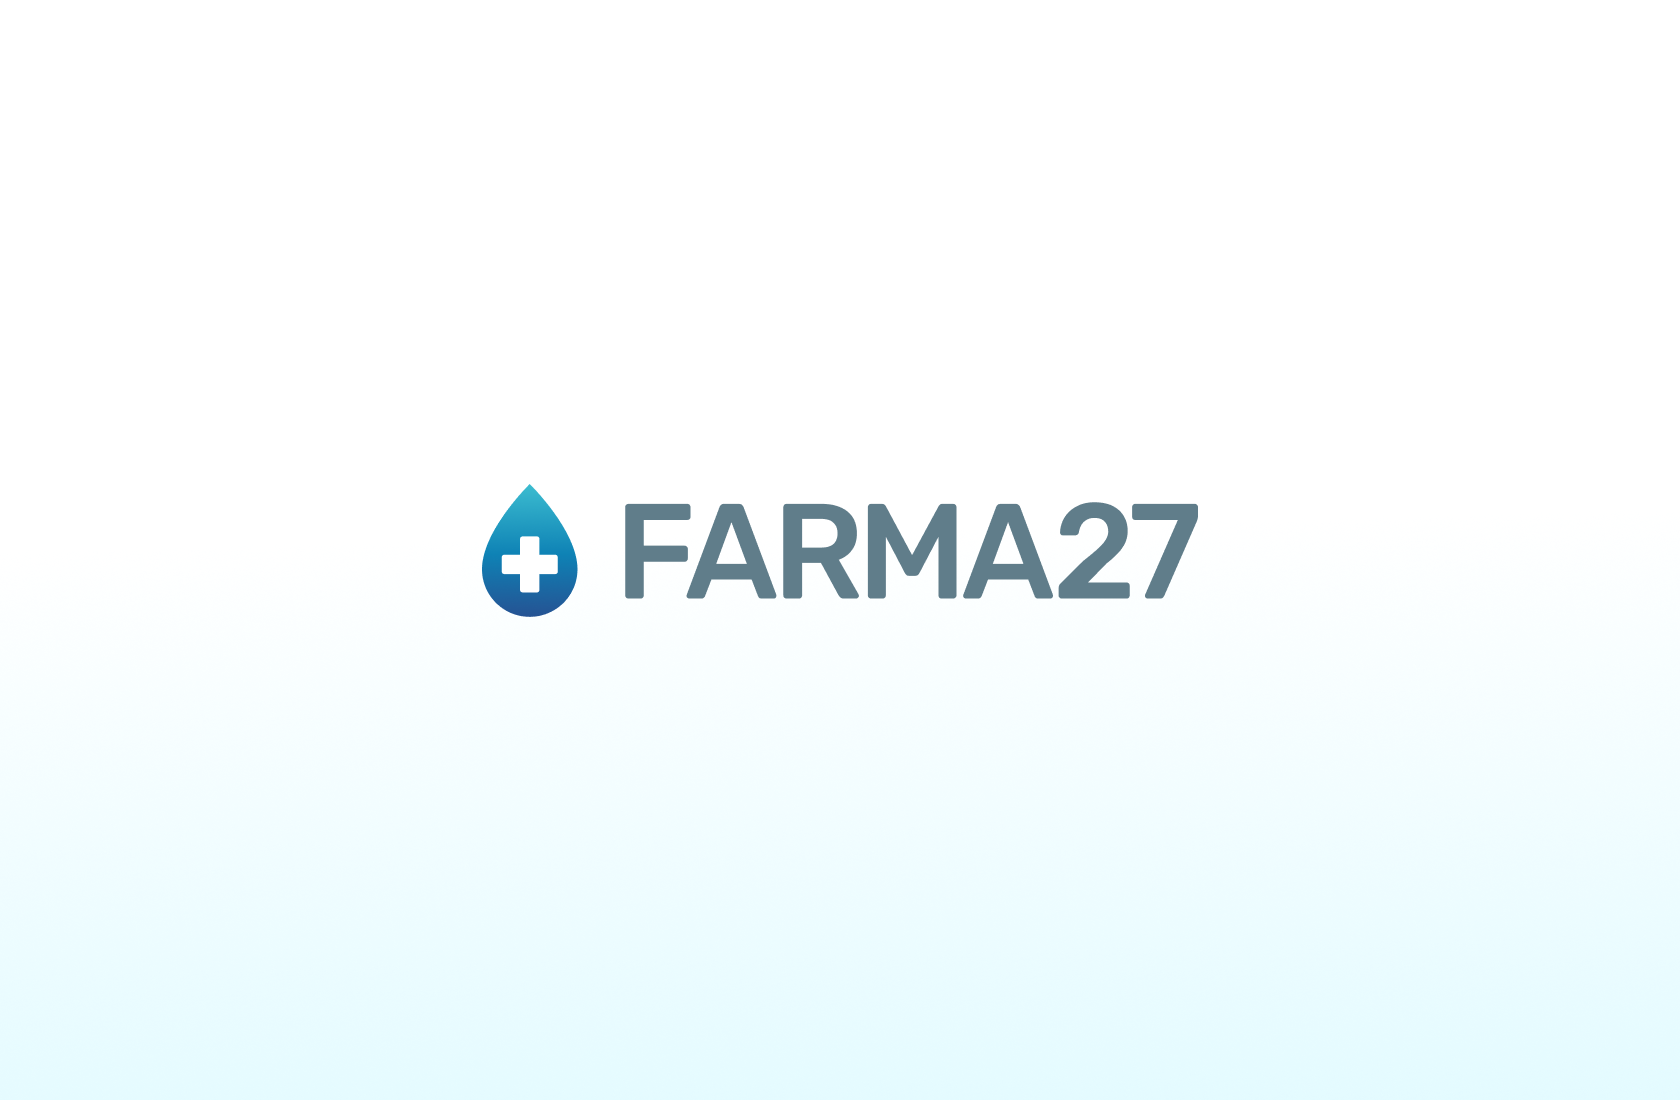 Farma27 - Un nuovo gestionale per controllare l'attività multi-channel di vendita per Farma27